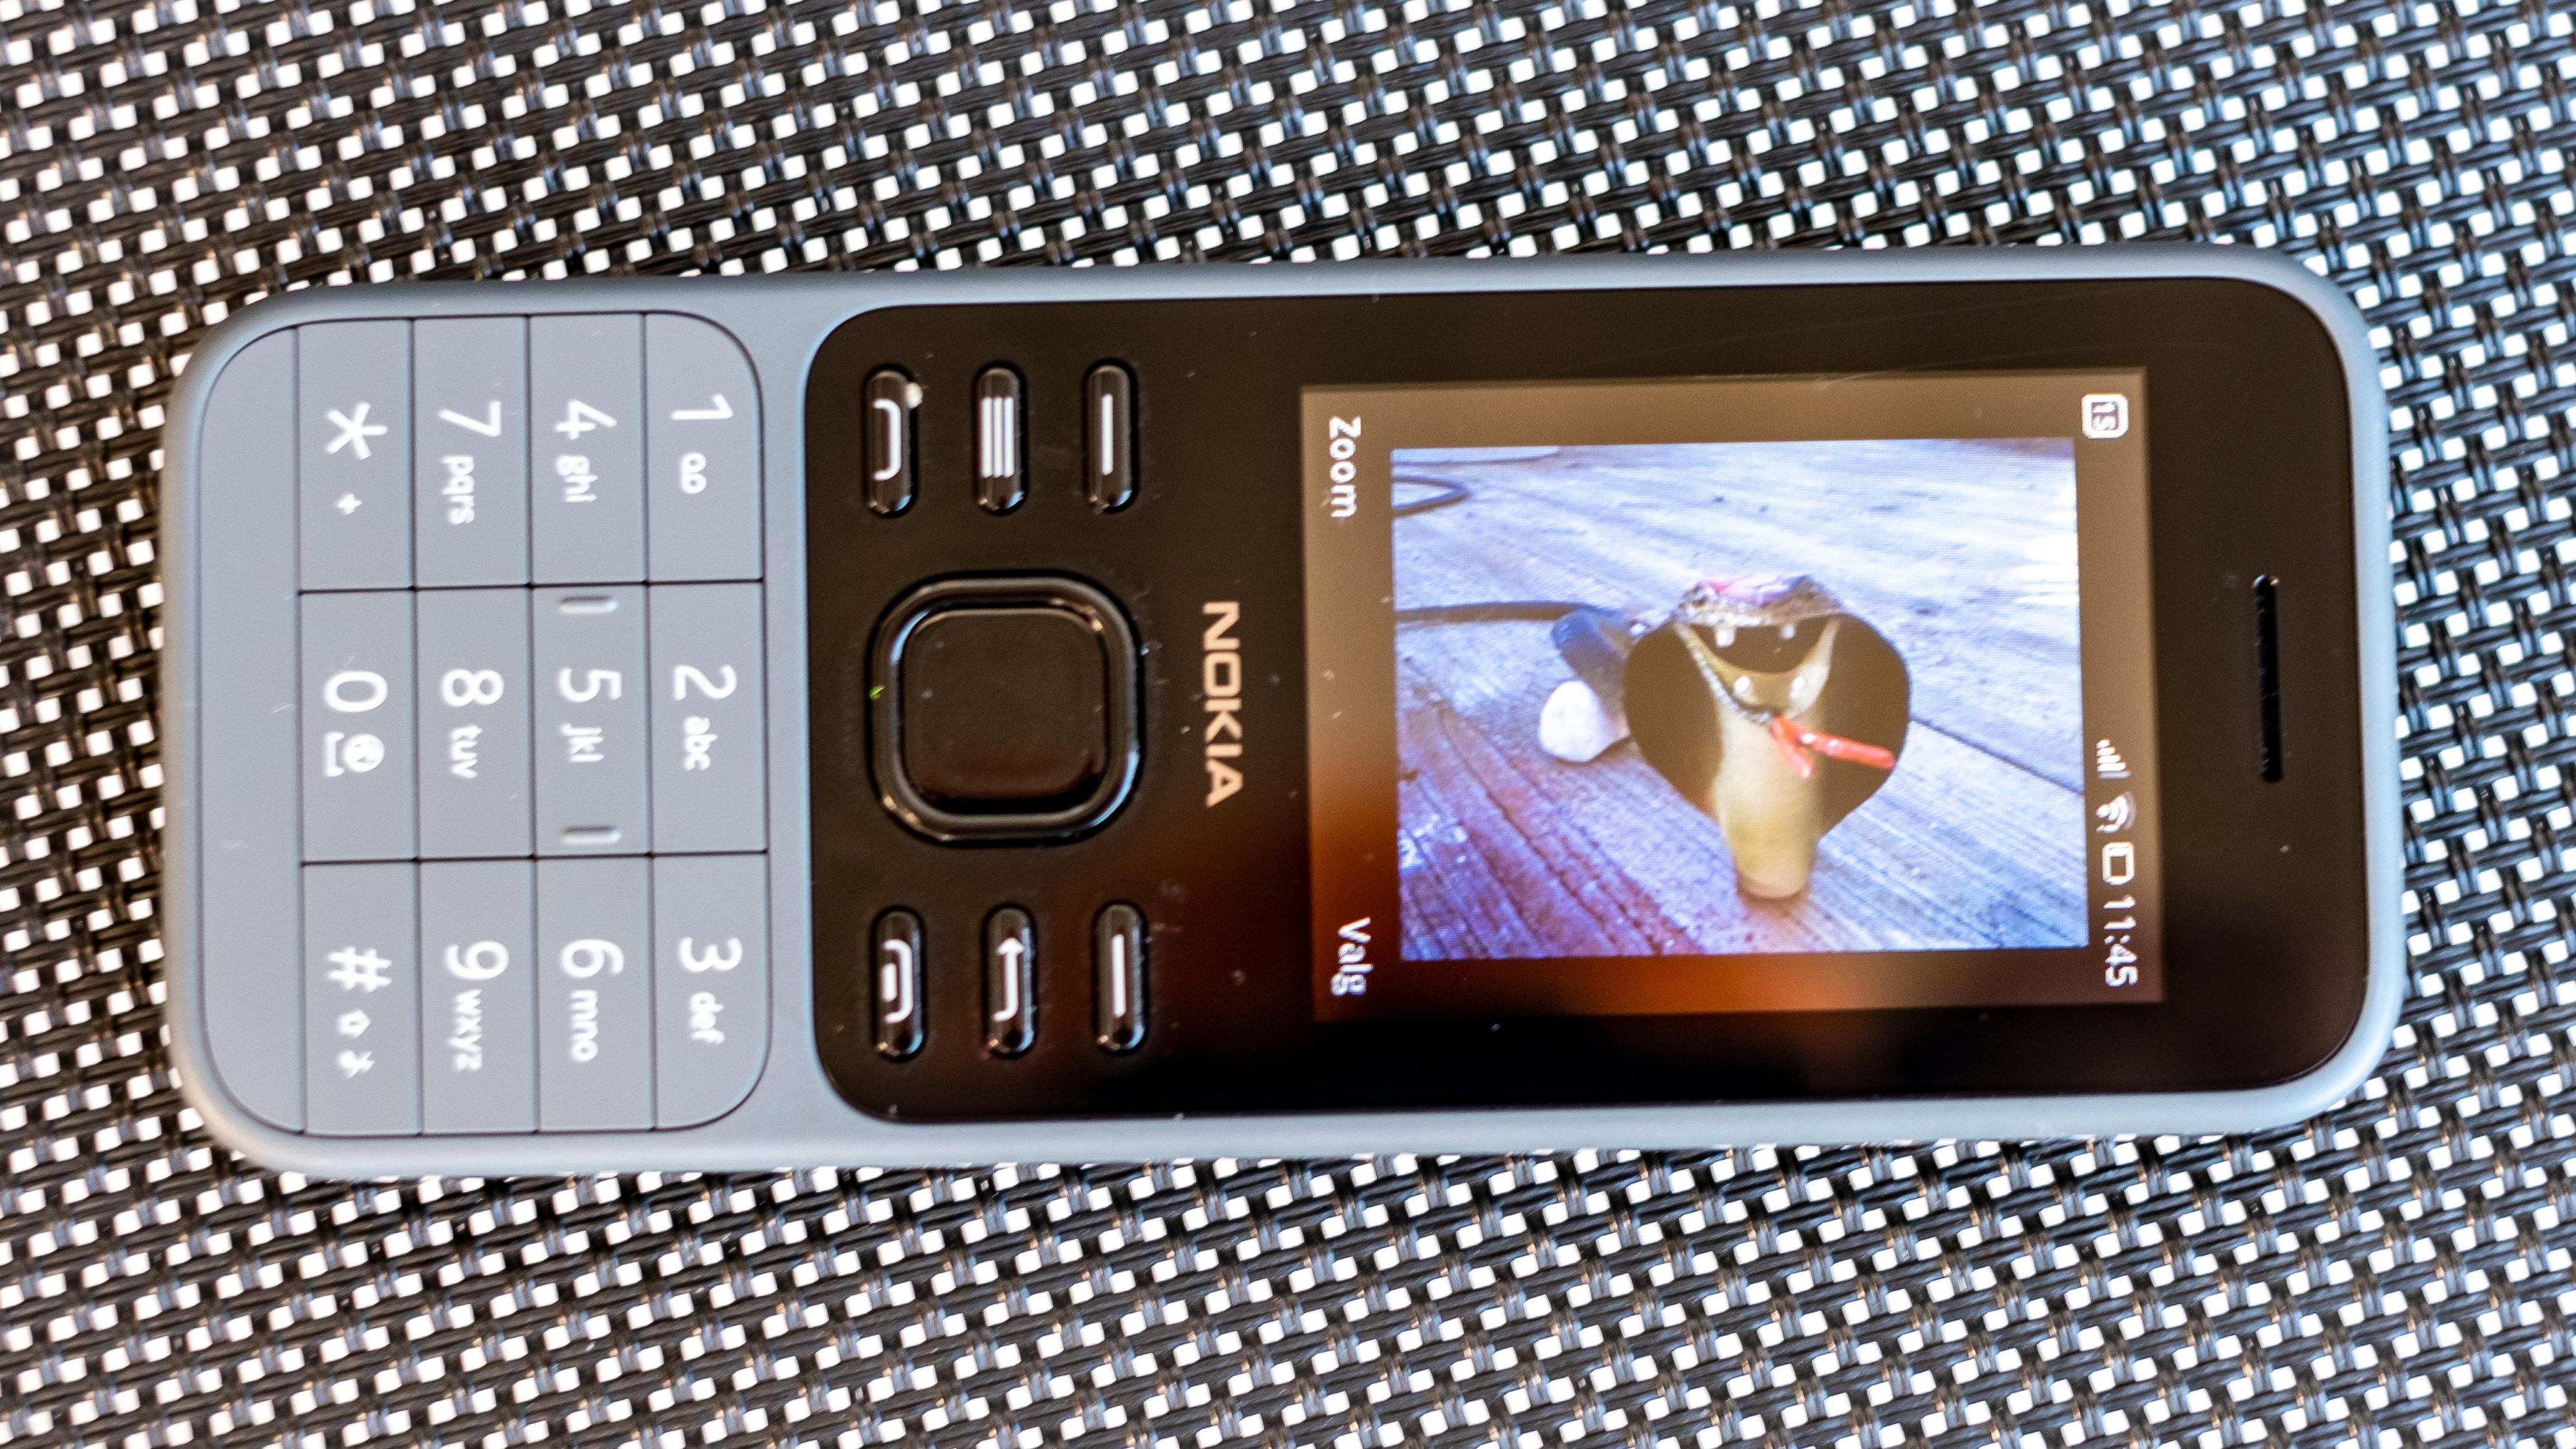 Å få et tydelig fokusert bilde av skjermen på Nokia 6300 er tidvis vanskelig. Den er for lite lyssterk, og har et litt blast plastdekke over seg. Men slik ser den ut fra best mulige vinkel. Telefonen har forøvrig Snake-spill - dette er dog kun et bilde av en skremmeslange mot fugler i hagen.